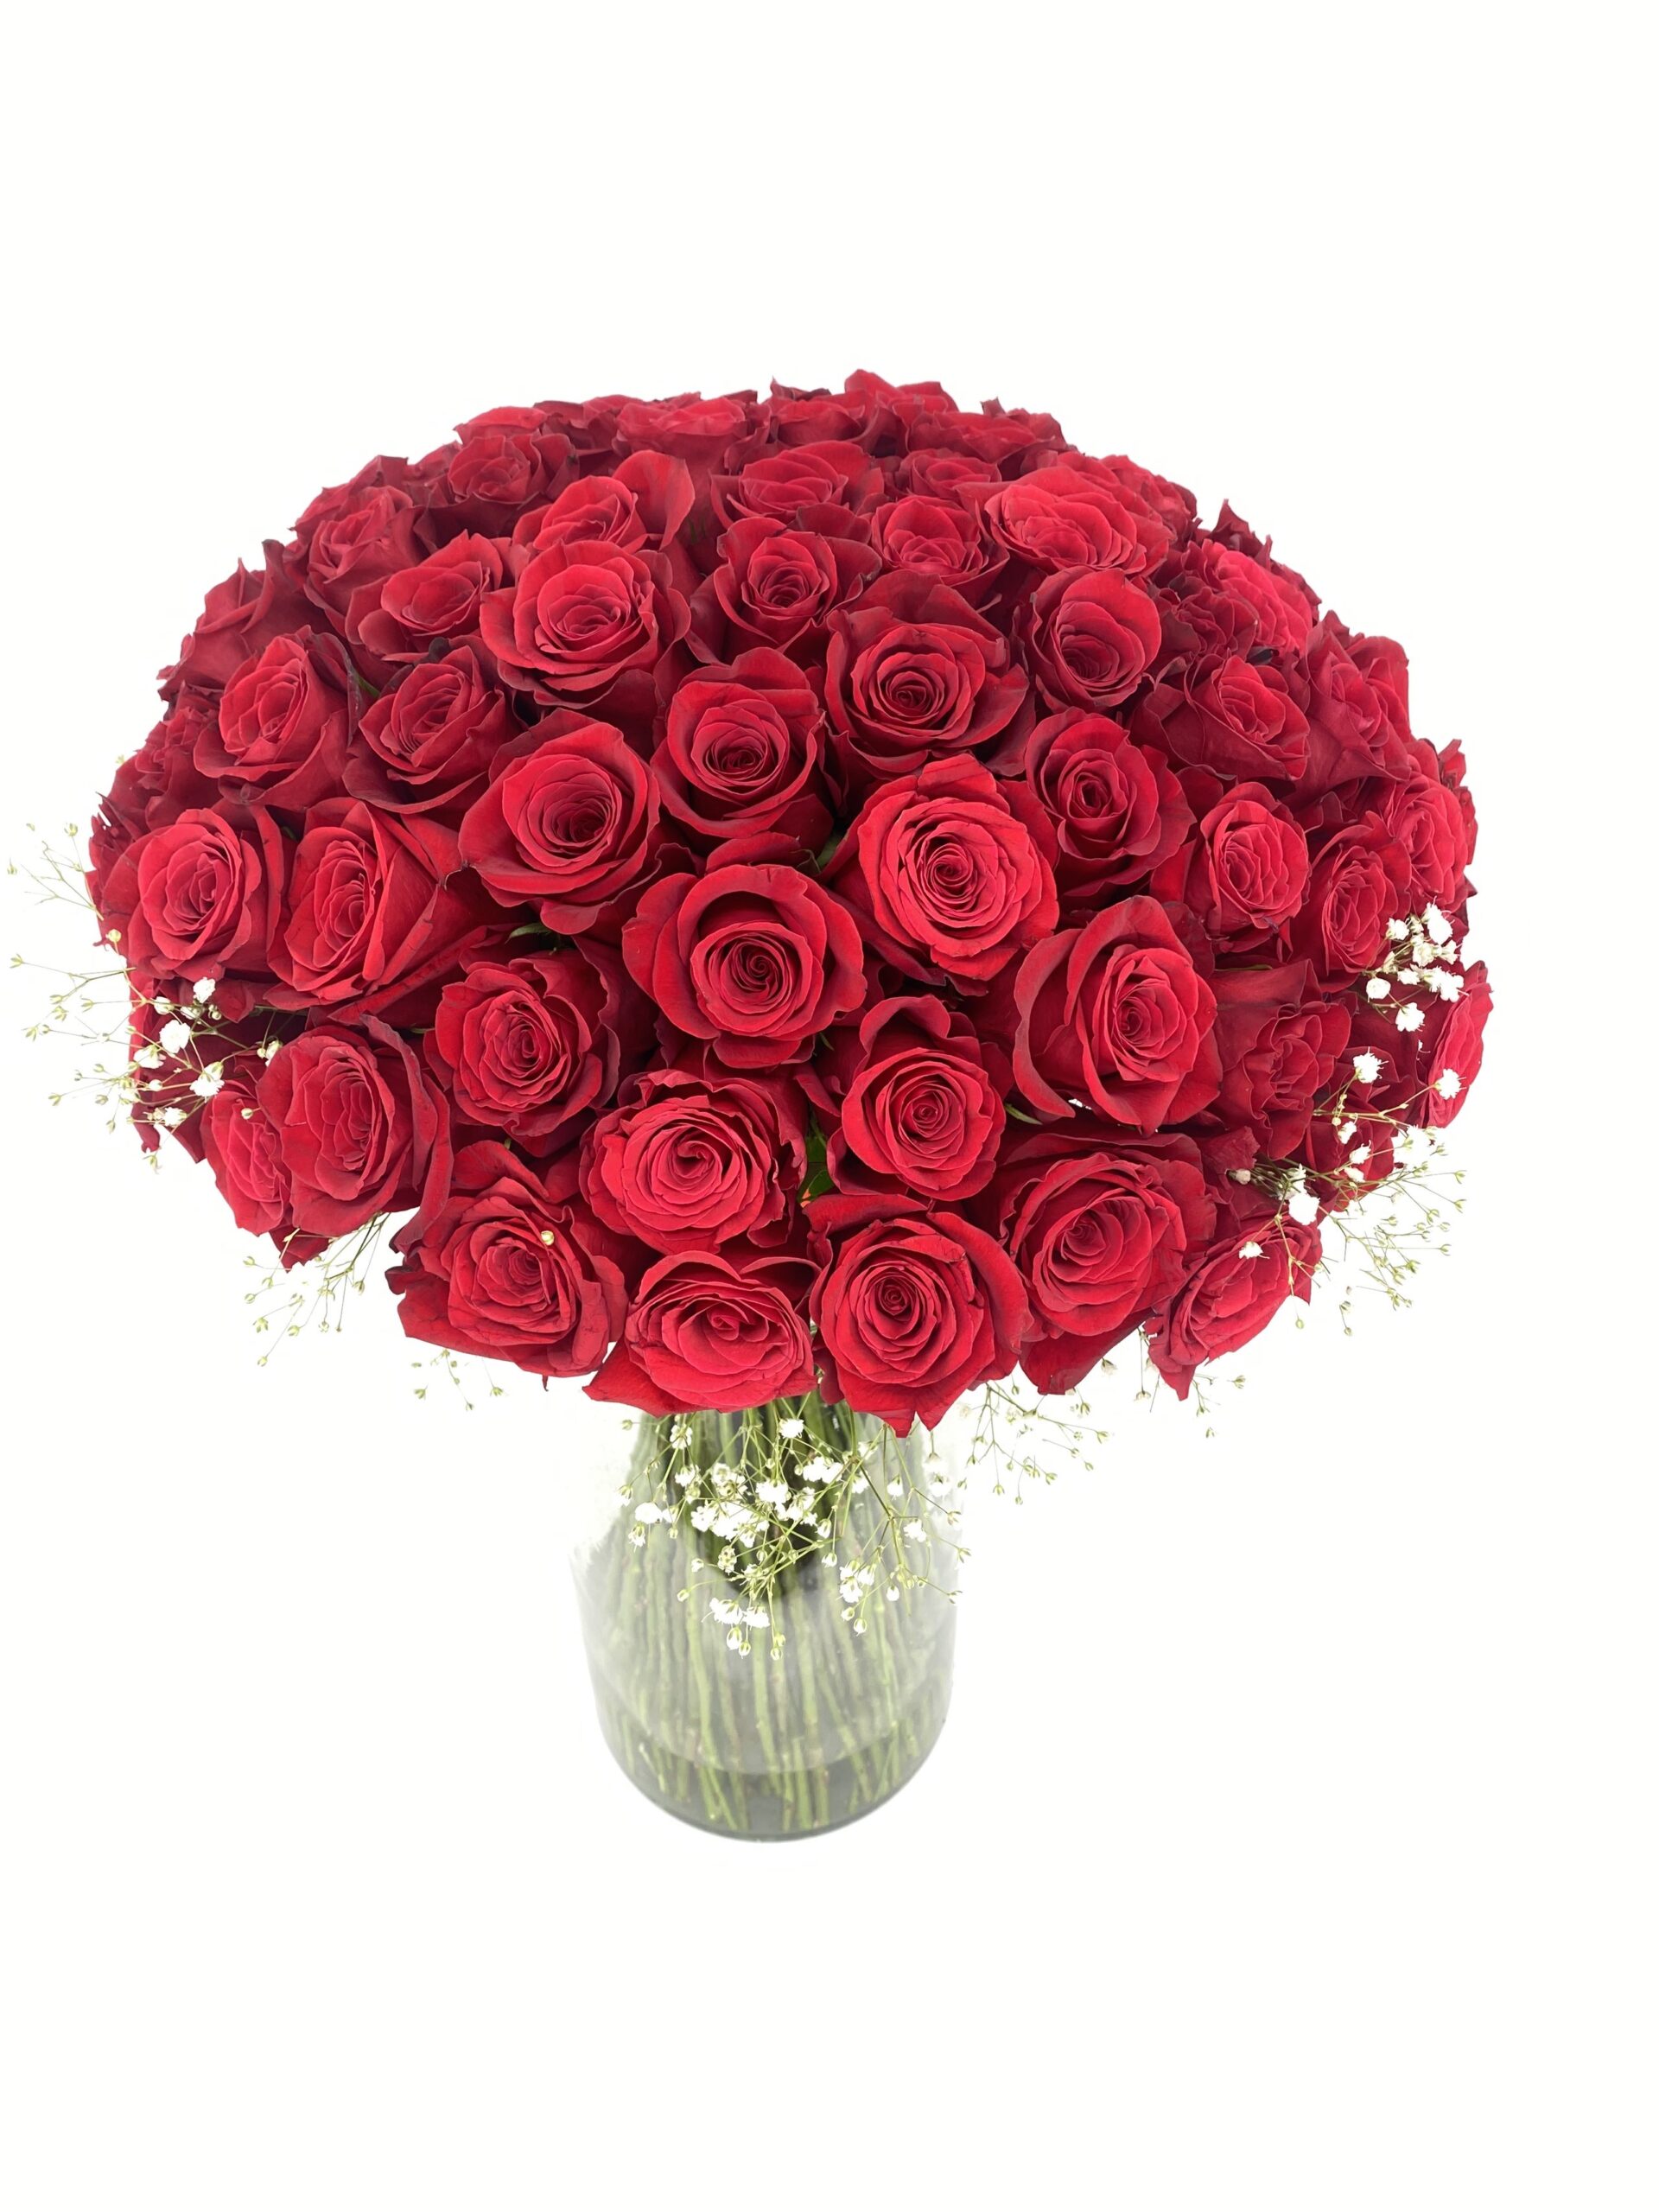 representación bandera nacional Muscular True Love – 100 Rosas Rojas – Ramo de flores – Bella Rosa